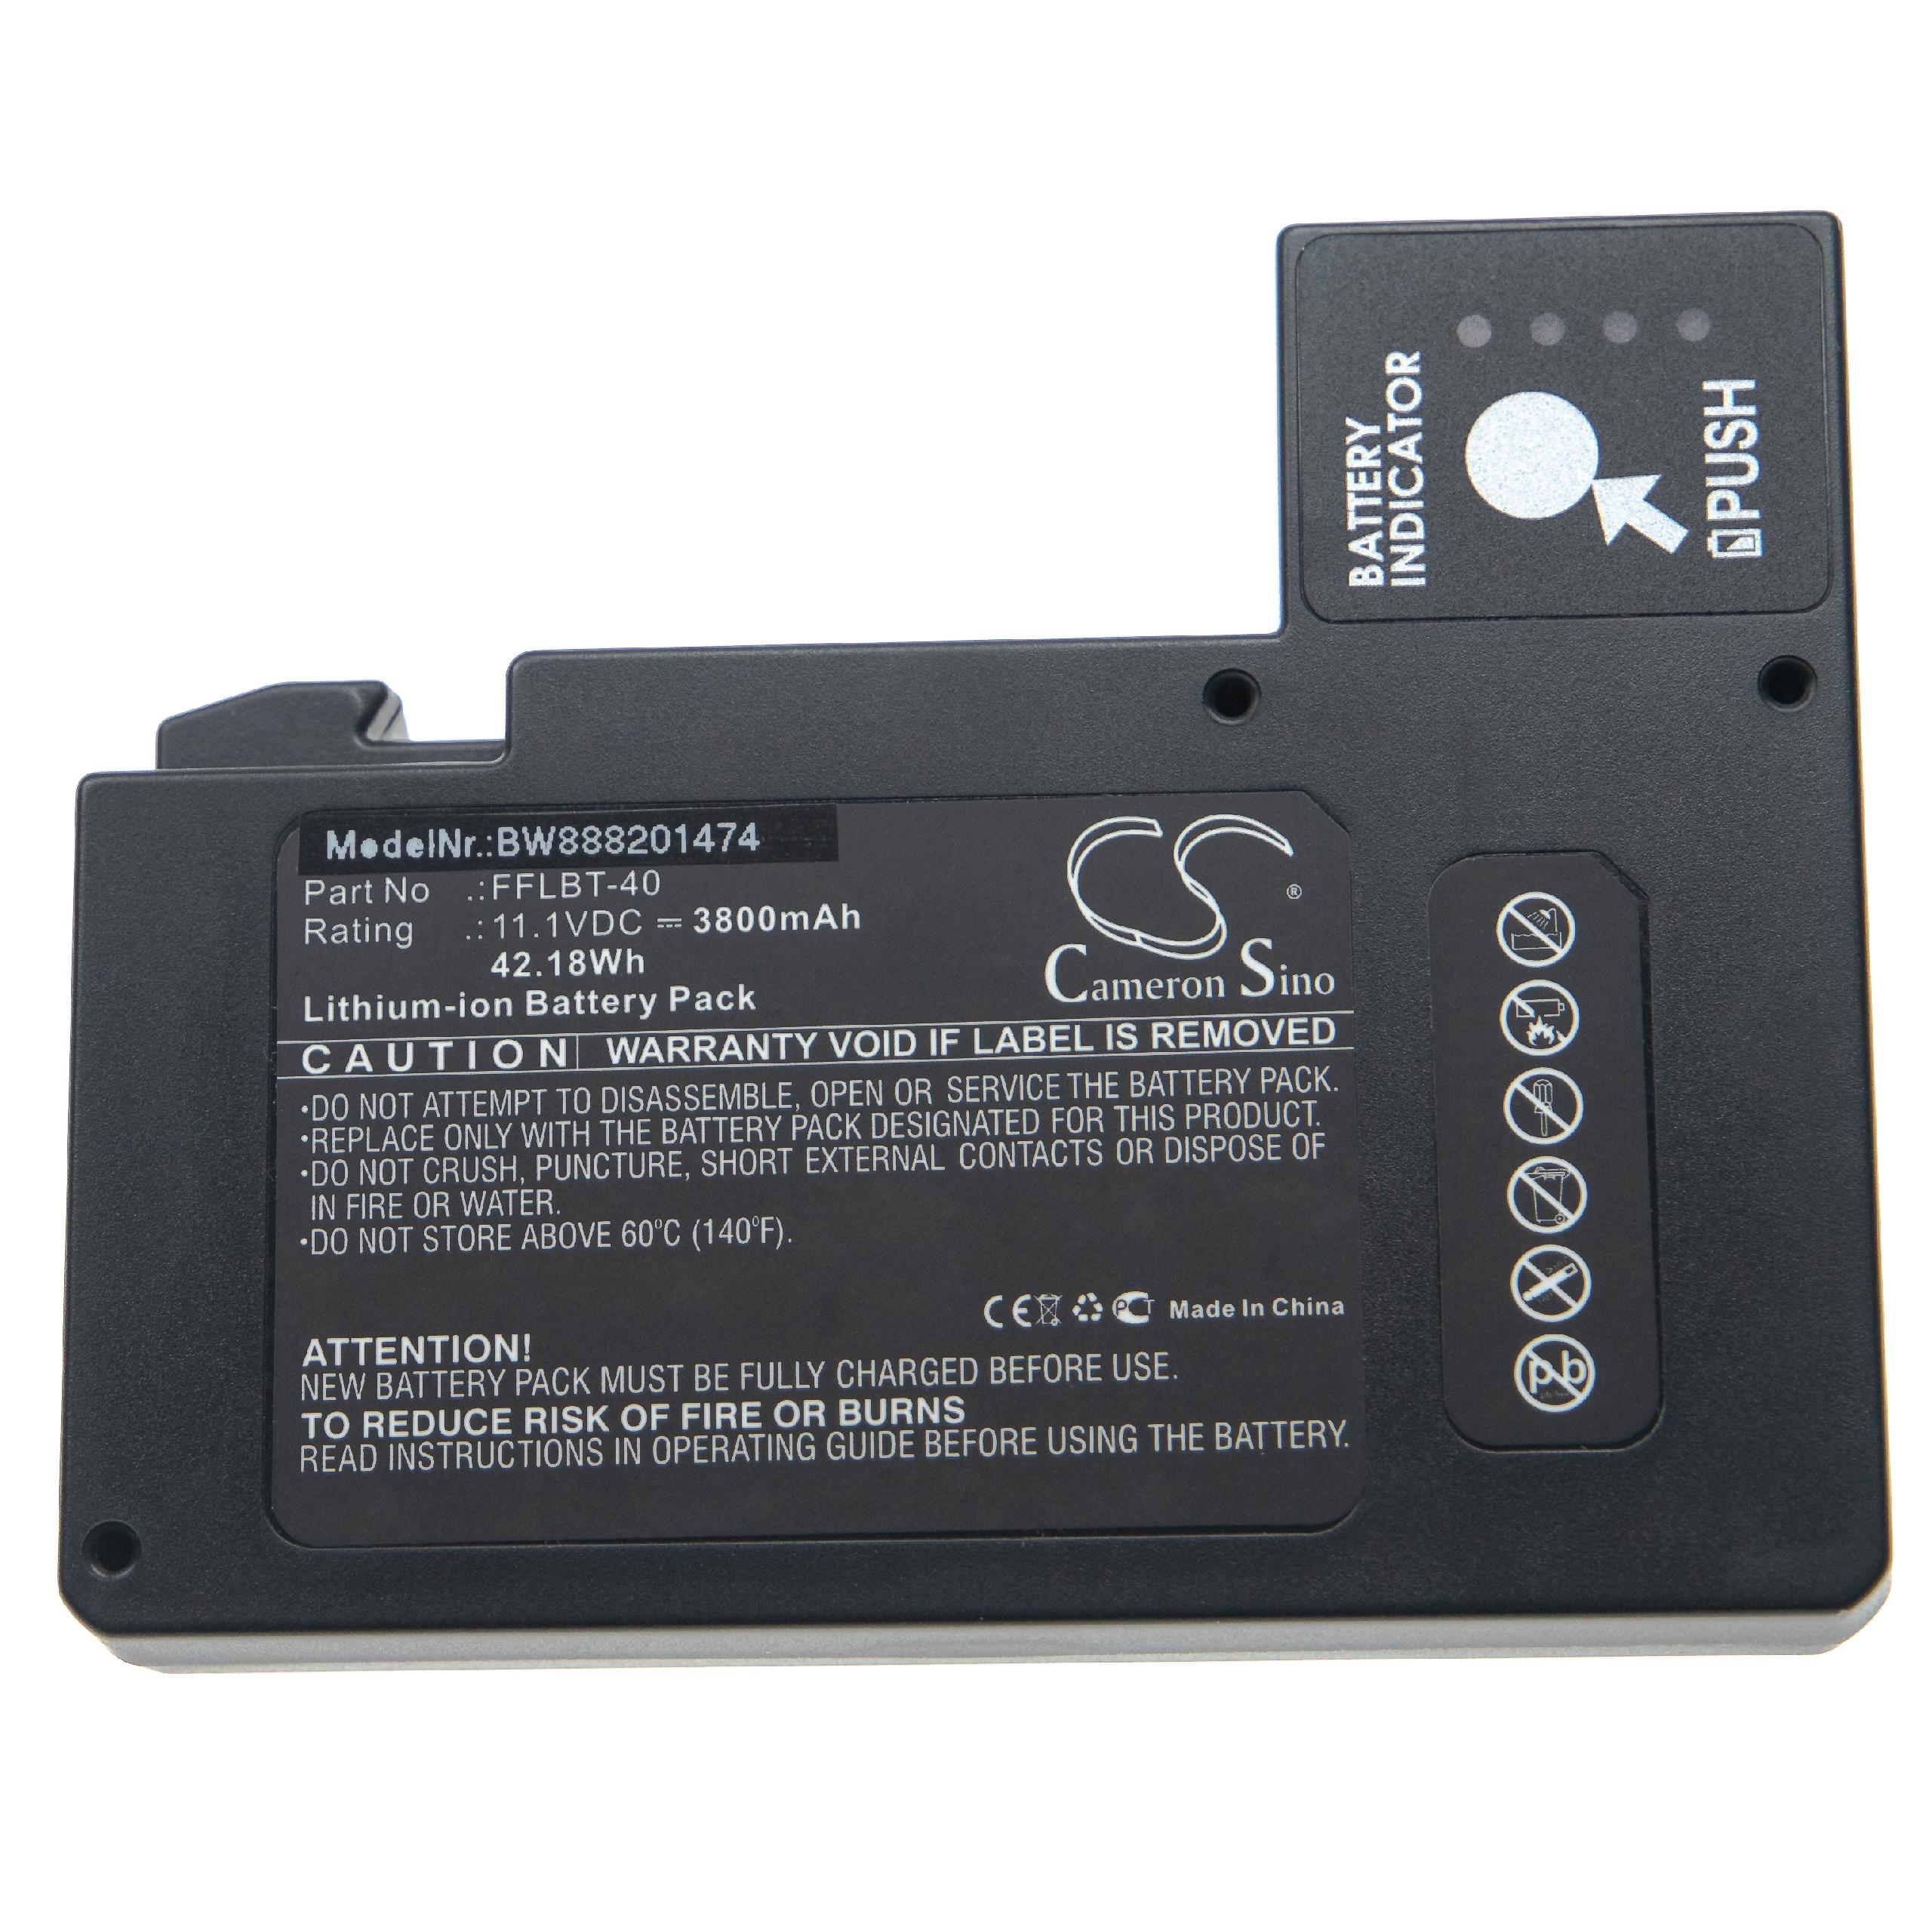 Batterie remplace INNO FFLBT-40 pour soudeuse - 3800mAh 11,1V Li-ion